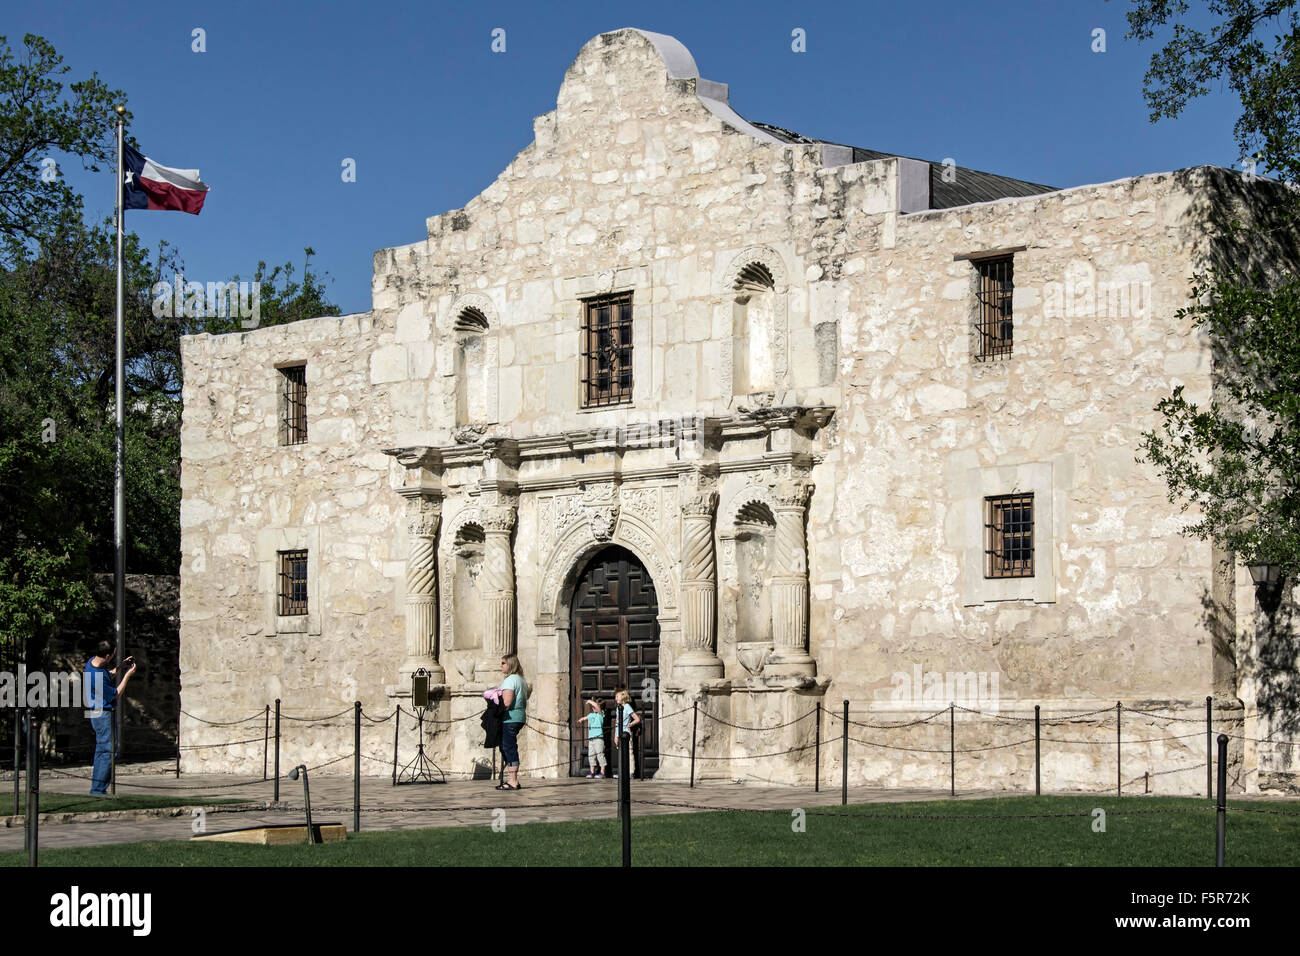 Menschen vor The Alamo (Mission San Antonio de Valero), San Antonio, Texas USA Stockfoto